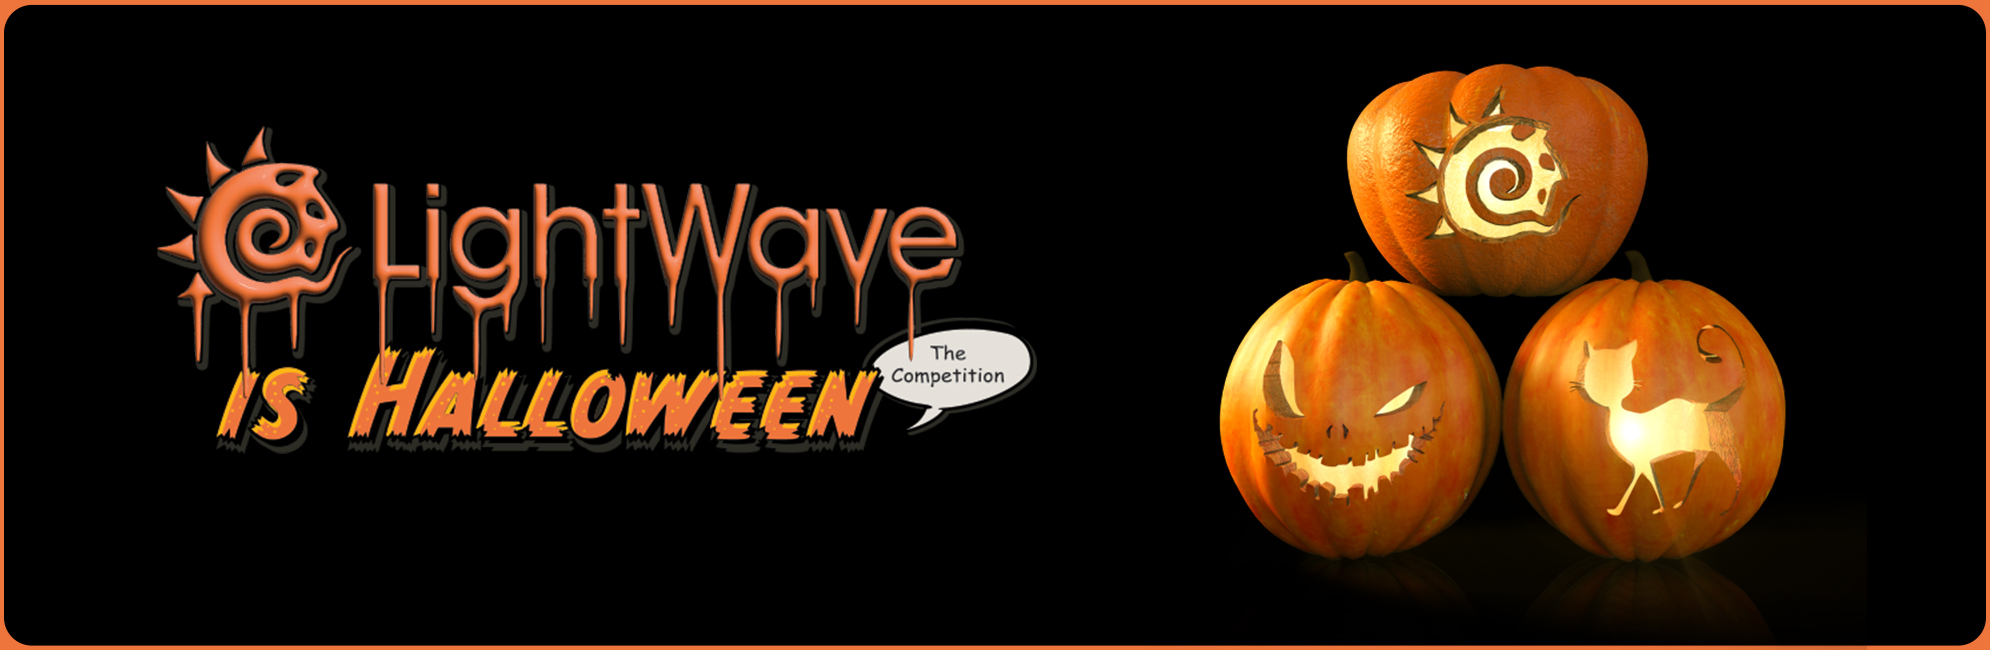 Nome: LightWave is Halloween  LightWave 3D Promo 20320918.jpg
Visite: 149
Dimensione: 387.4 KB